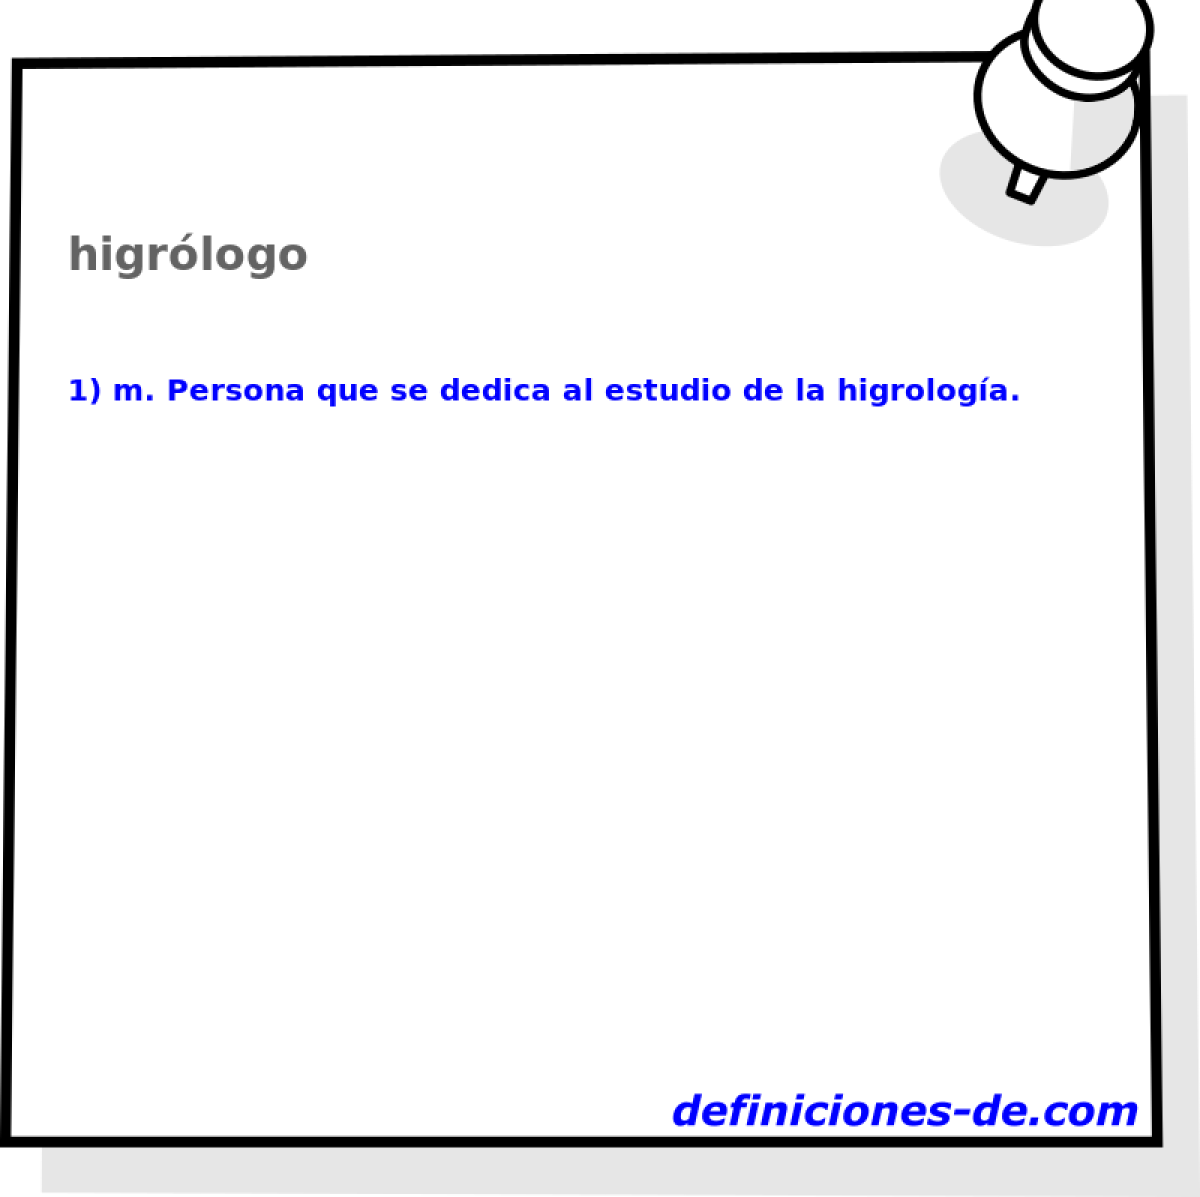 higrlogo 